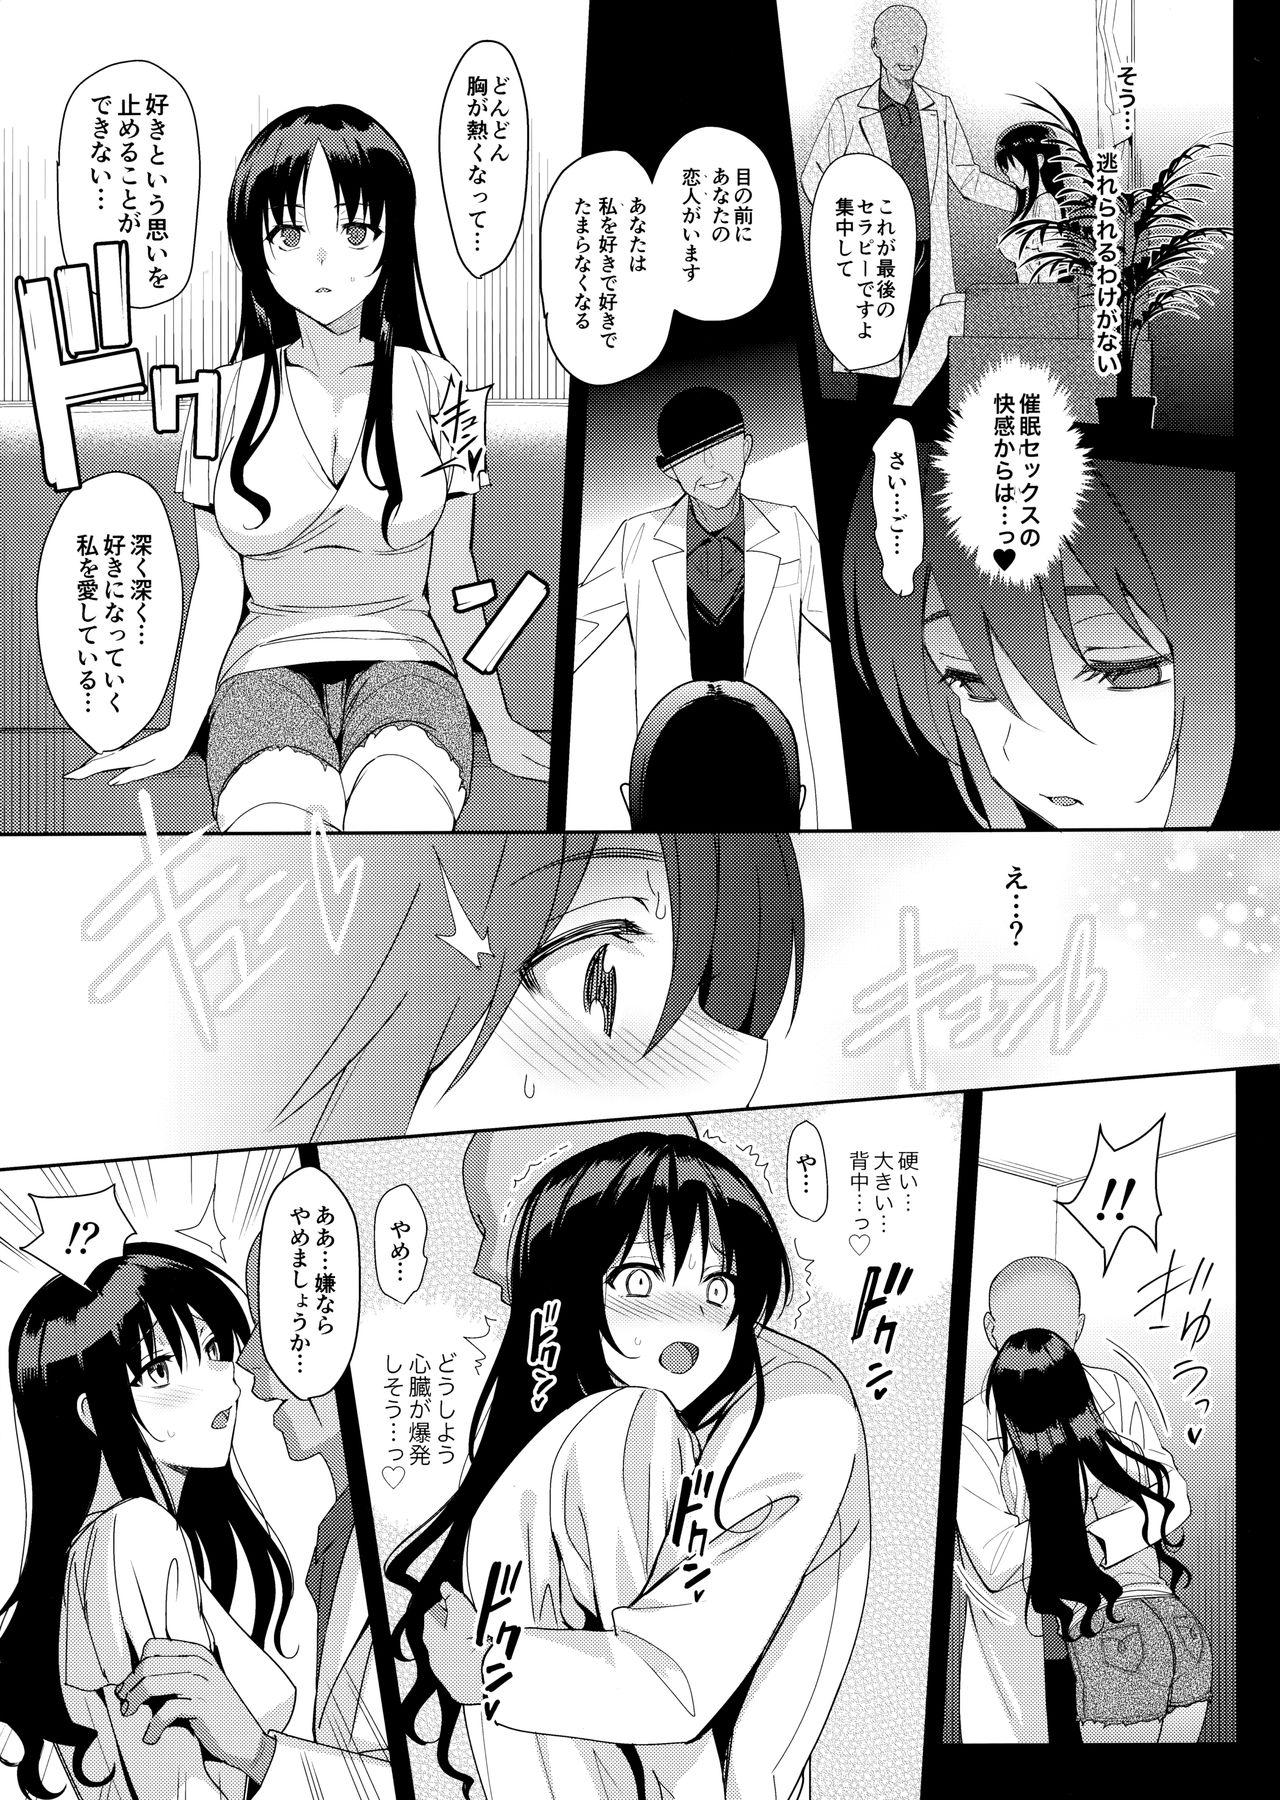 Cachonda Mesmerism 6 + Mesmerism x Kusakabe Yuiko - Original Cums - Page 6